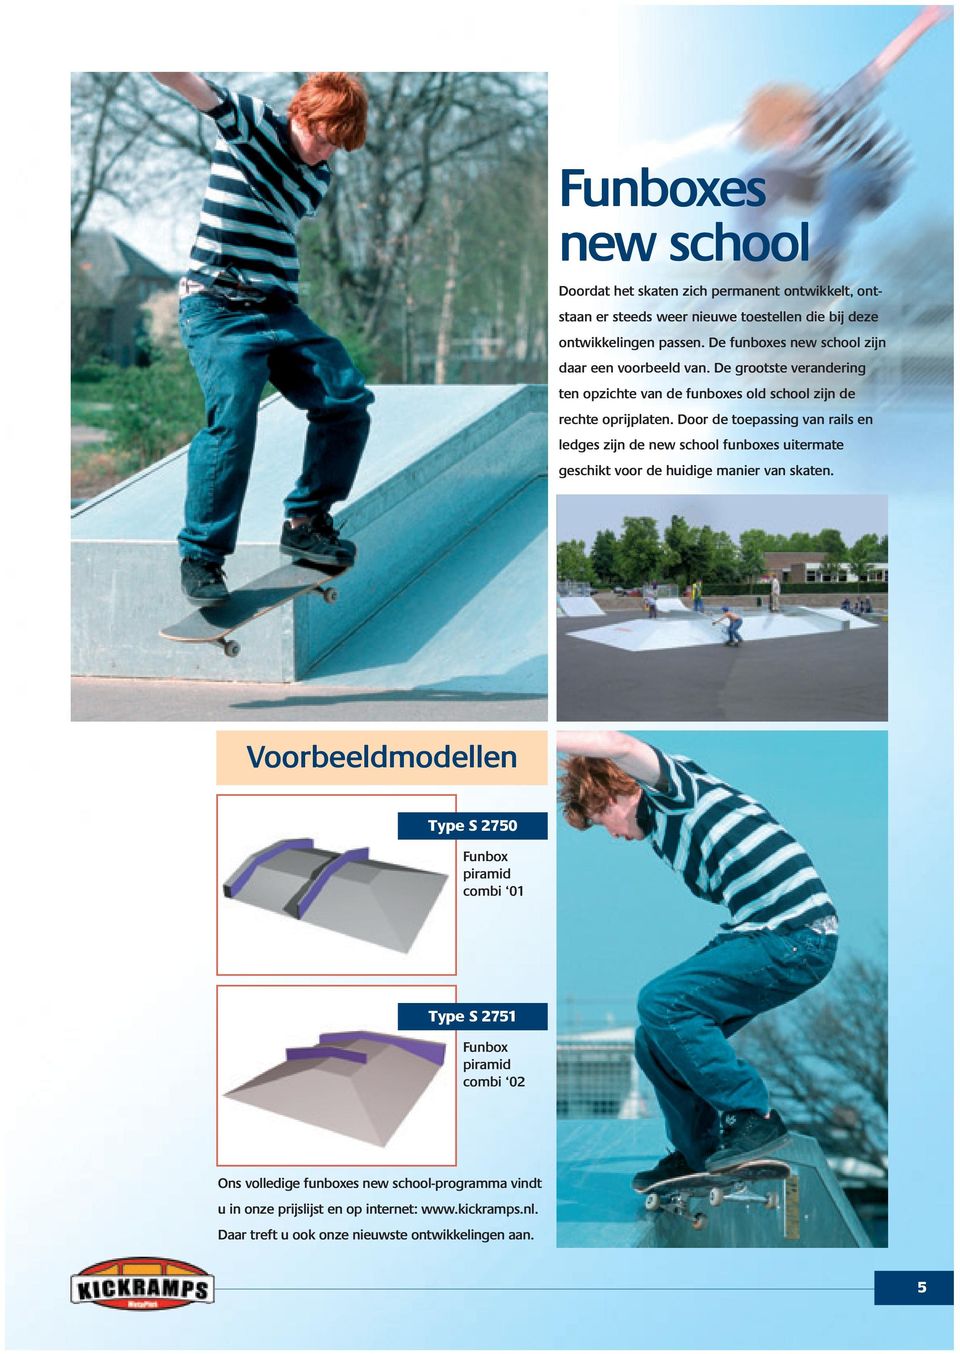 Door de toepassing van rails en ledges zijn de new school funboxes uitermate geschikt voor de huidige manier van skaten.